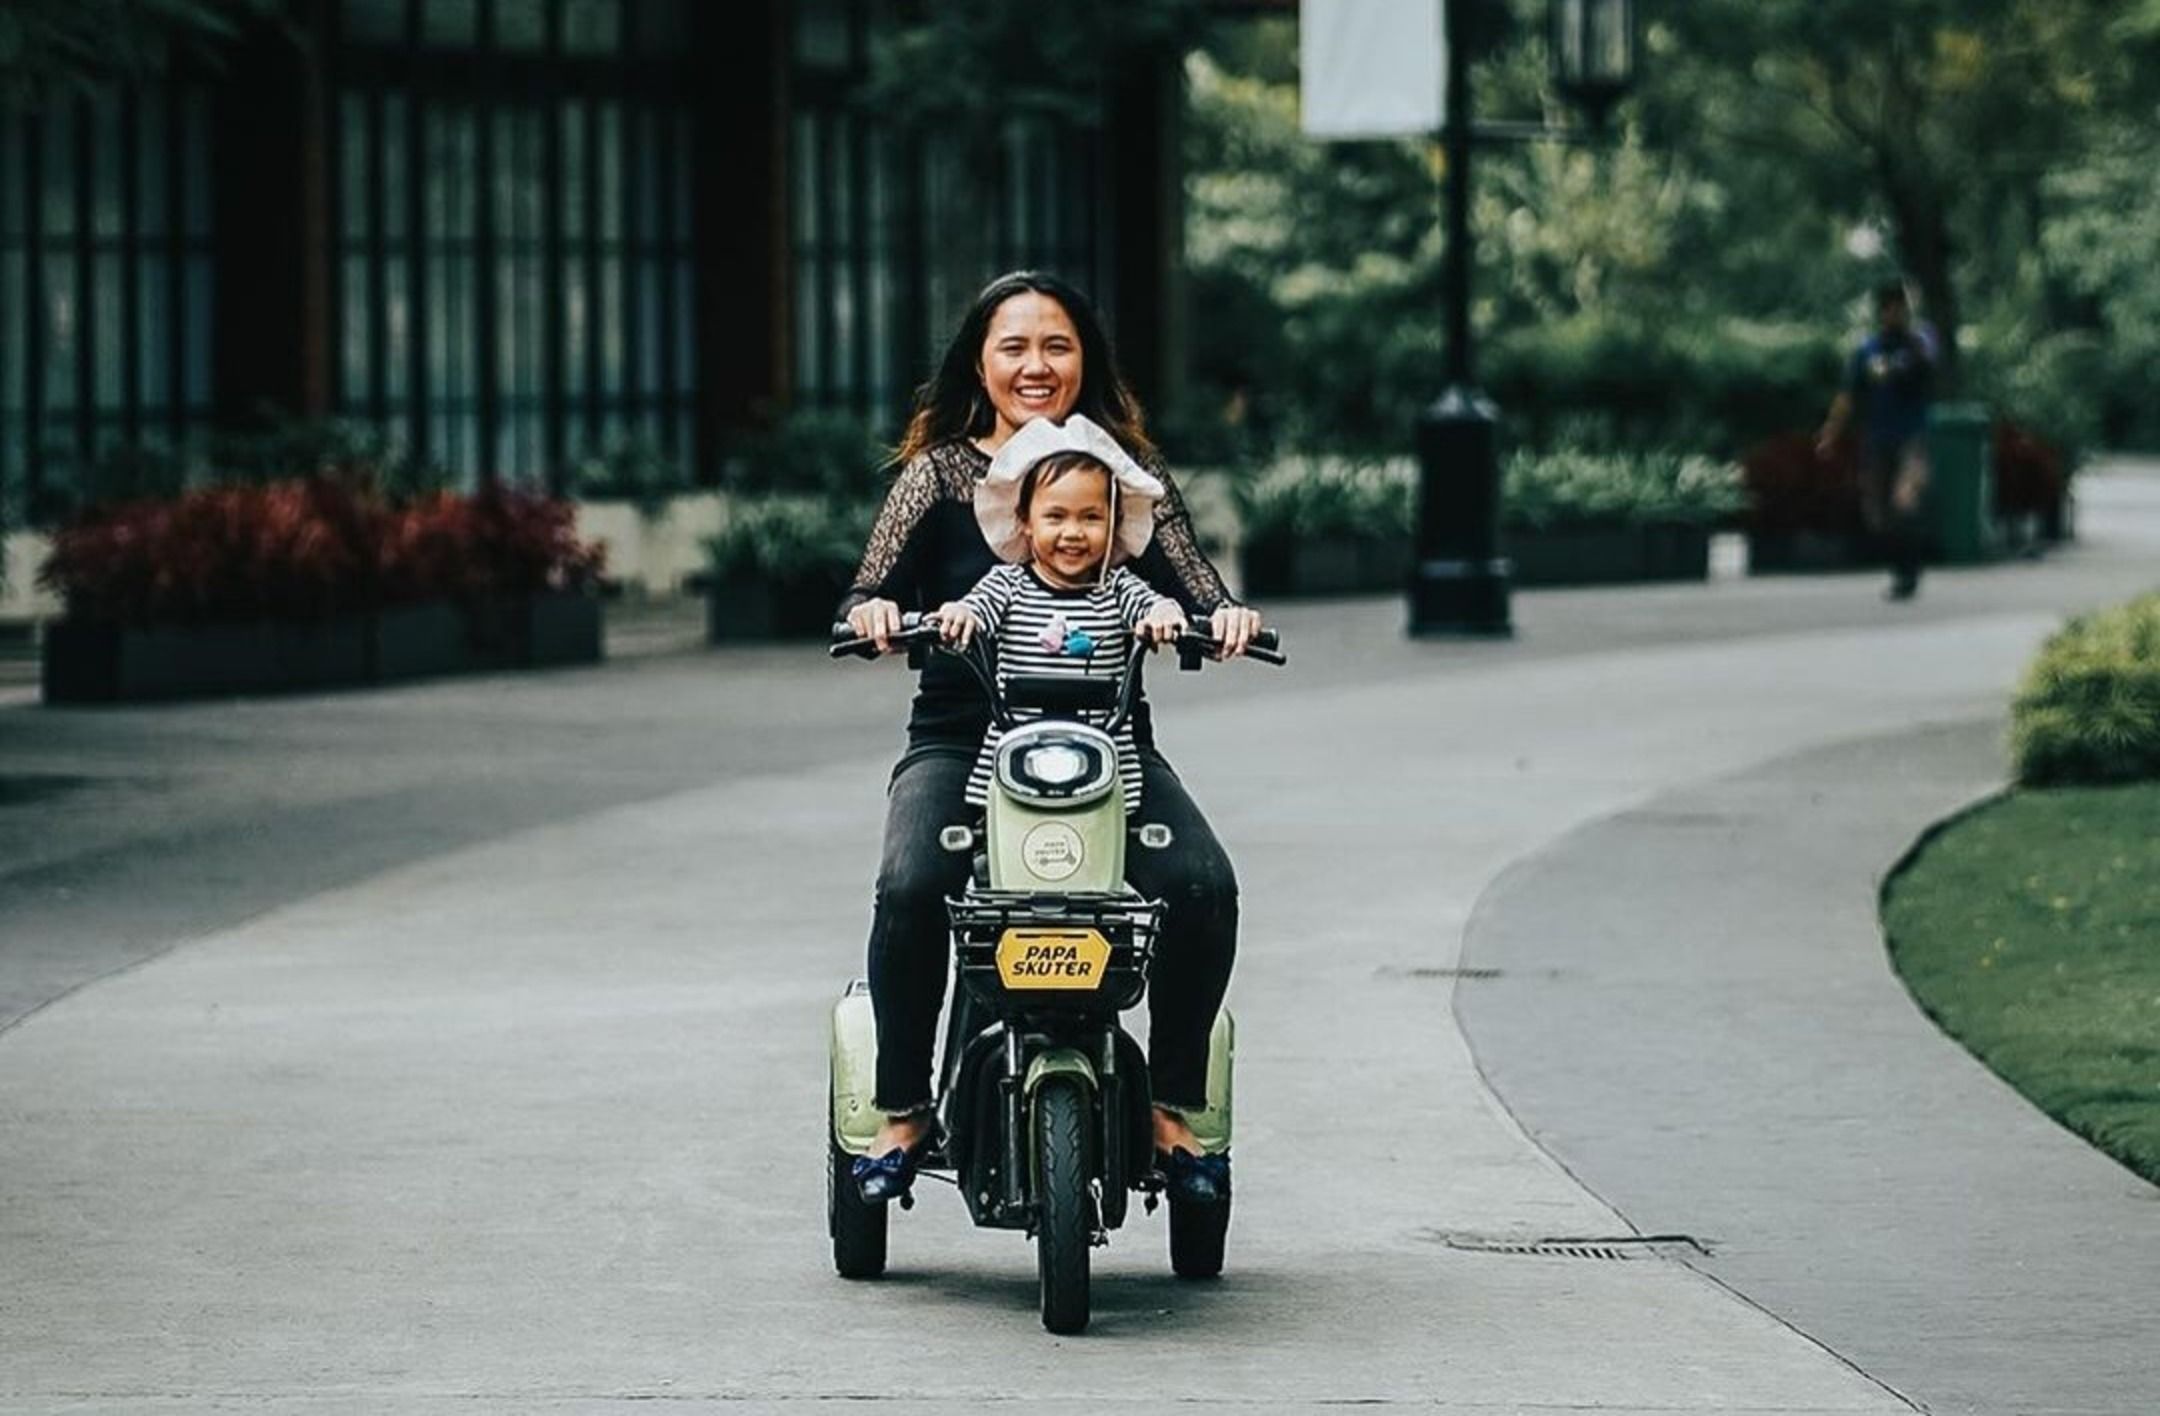 Menikmati keseruan bersama anak dengan berkunjung ke wisata Kiara Artha Park Bandung/ Instagram/ @jeanettegy